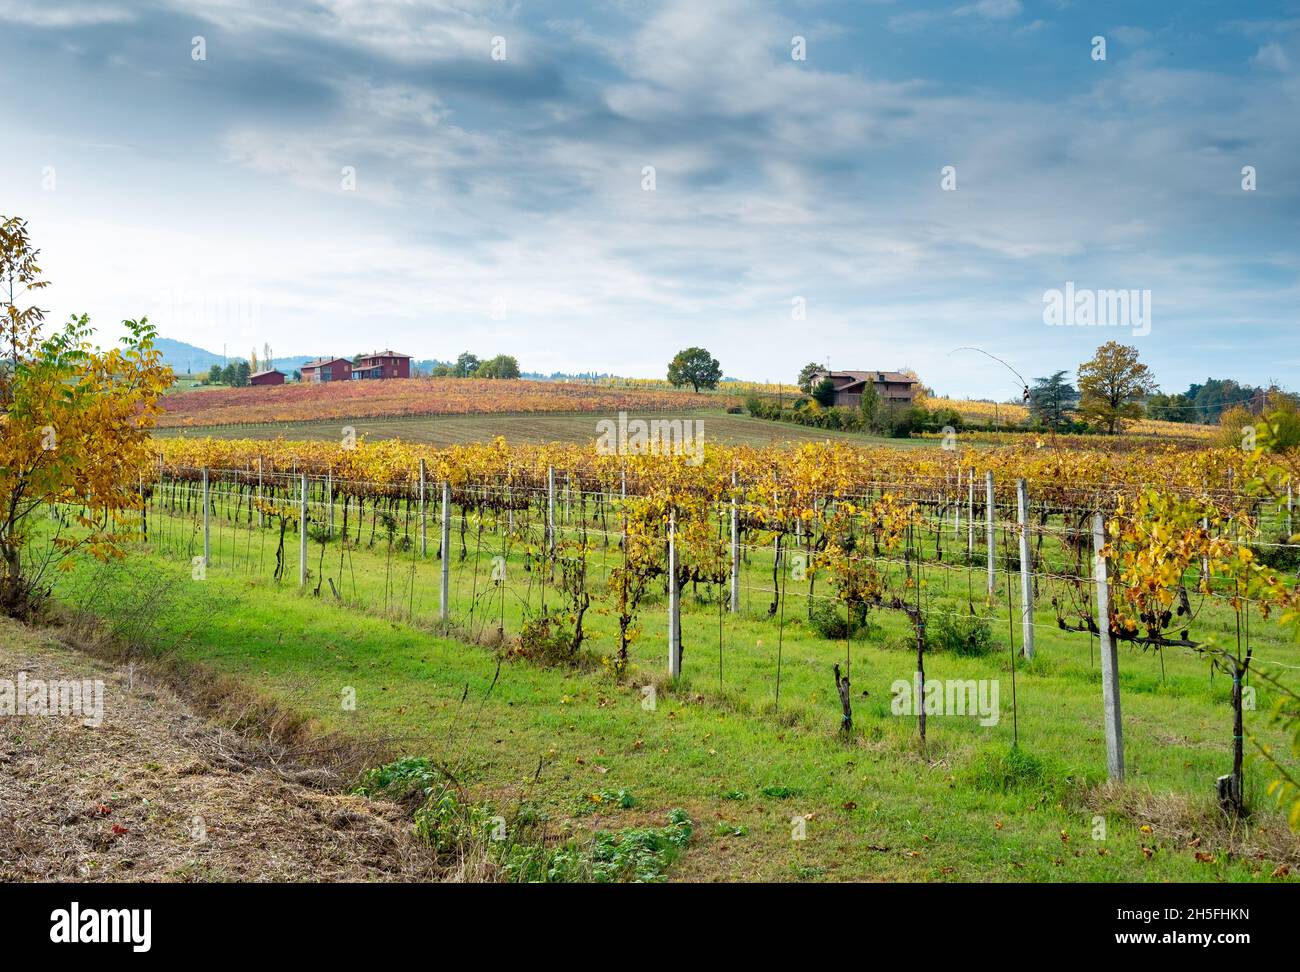 Herbstliche Weinberge auf den sanften Hügeln der Landschaft von Bologna. Crespellano, Provinz Bologna, Emilia-Romagna, Italien Stockfoto